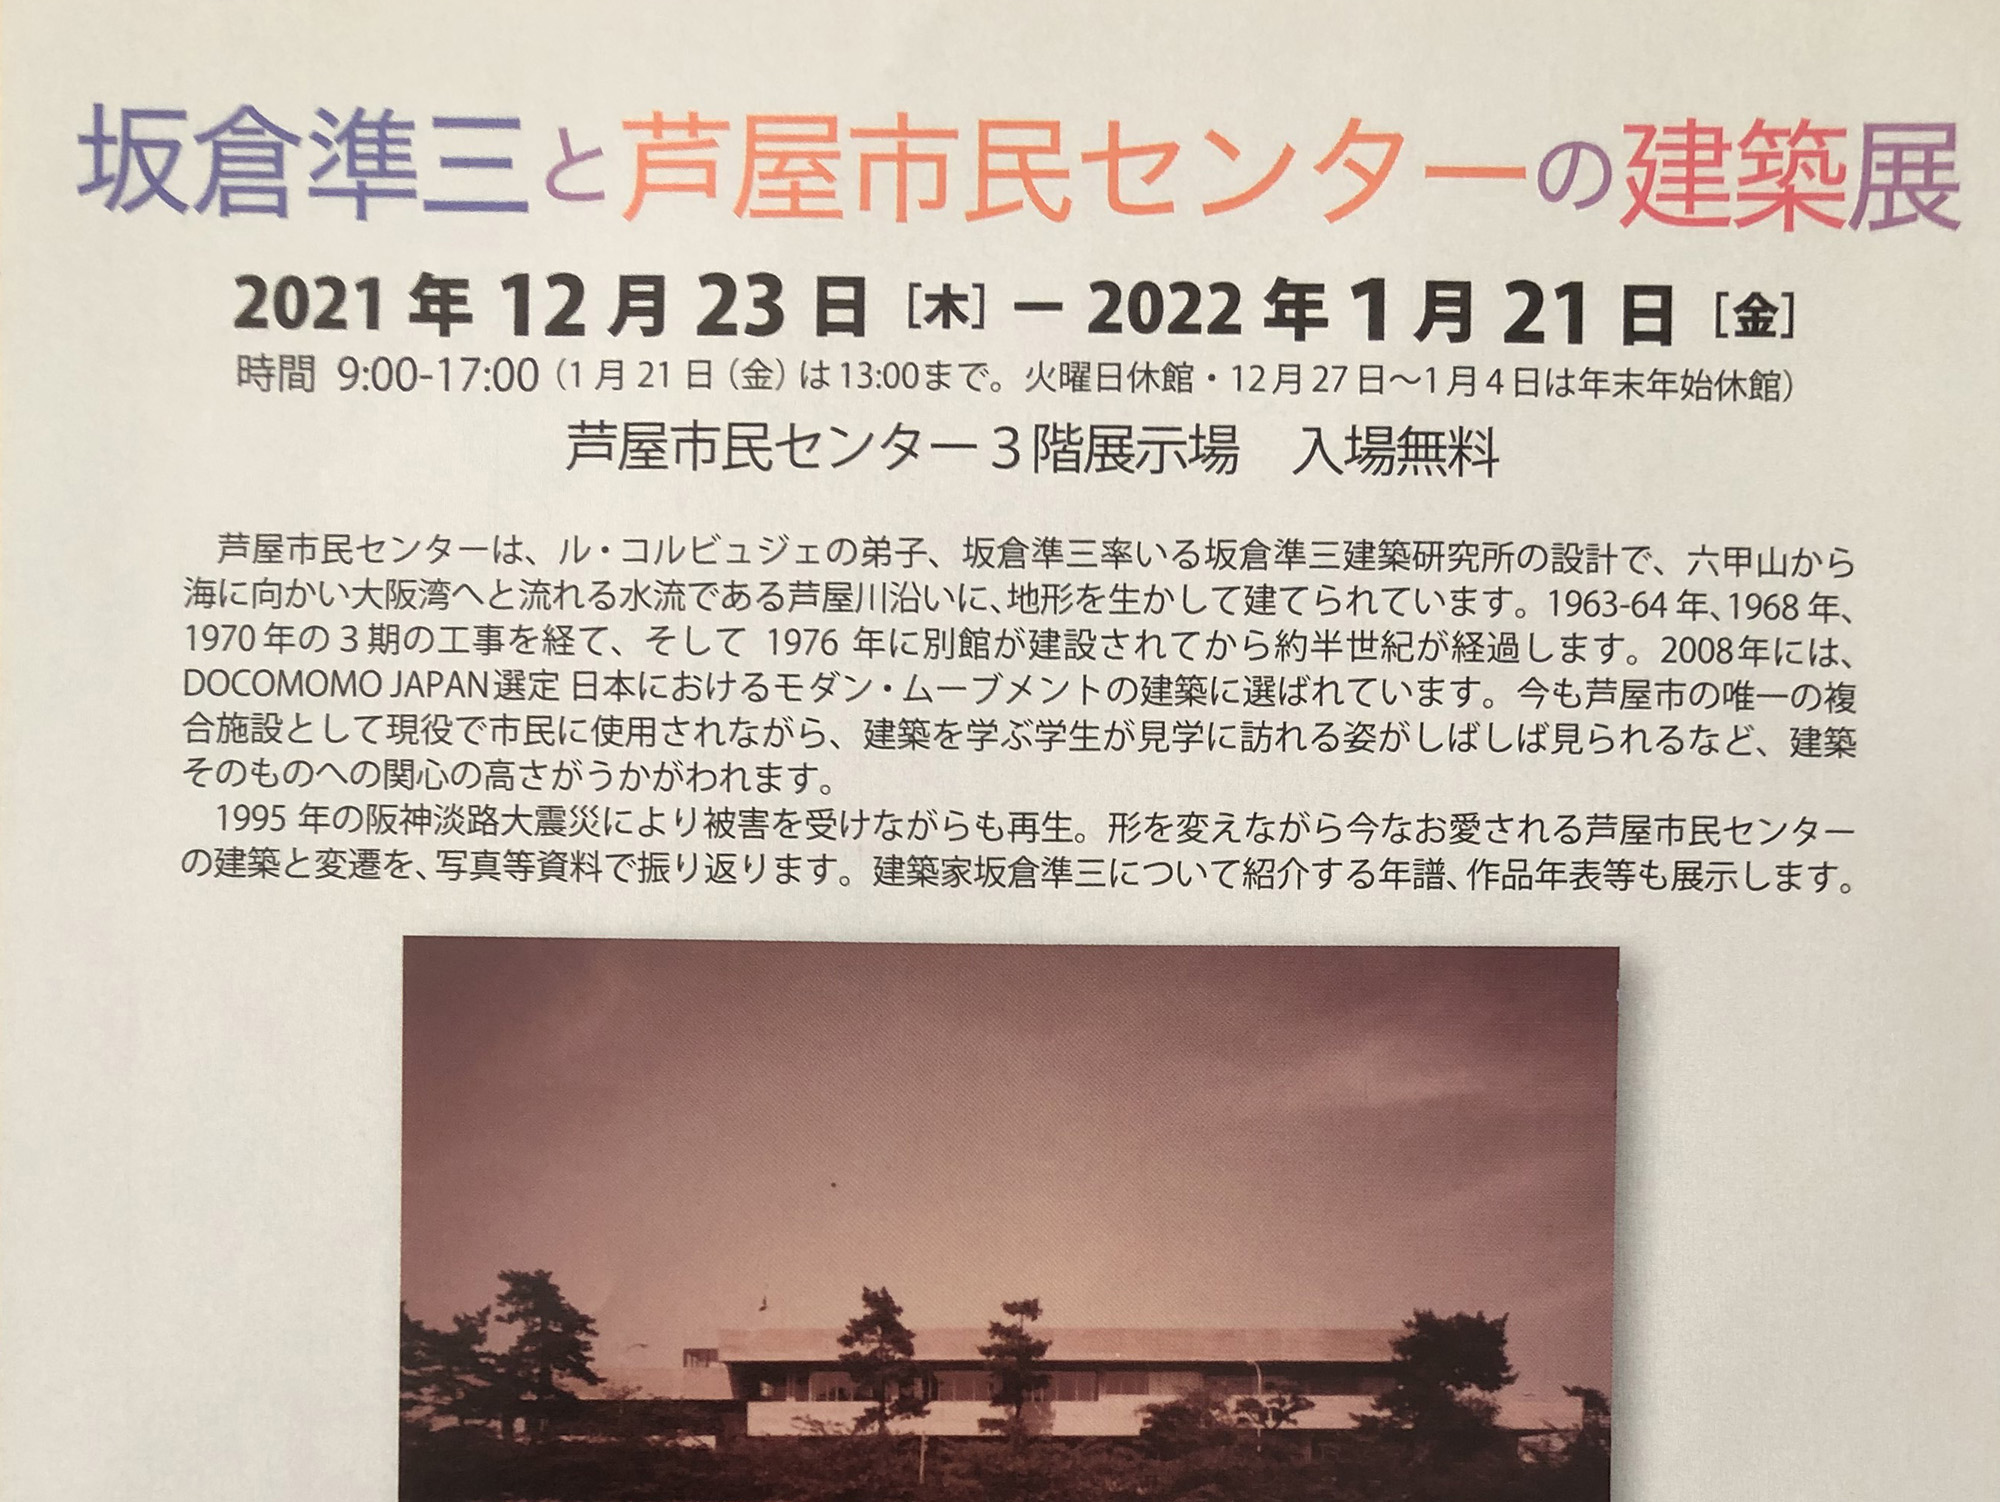 2021年12月23日～ 坂倉準三と芦屋市民センターの建築展